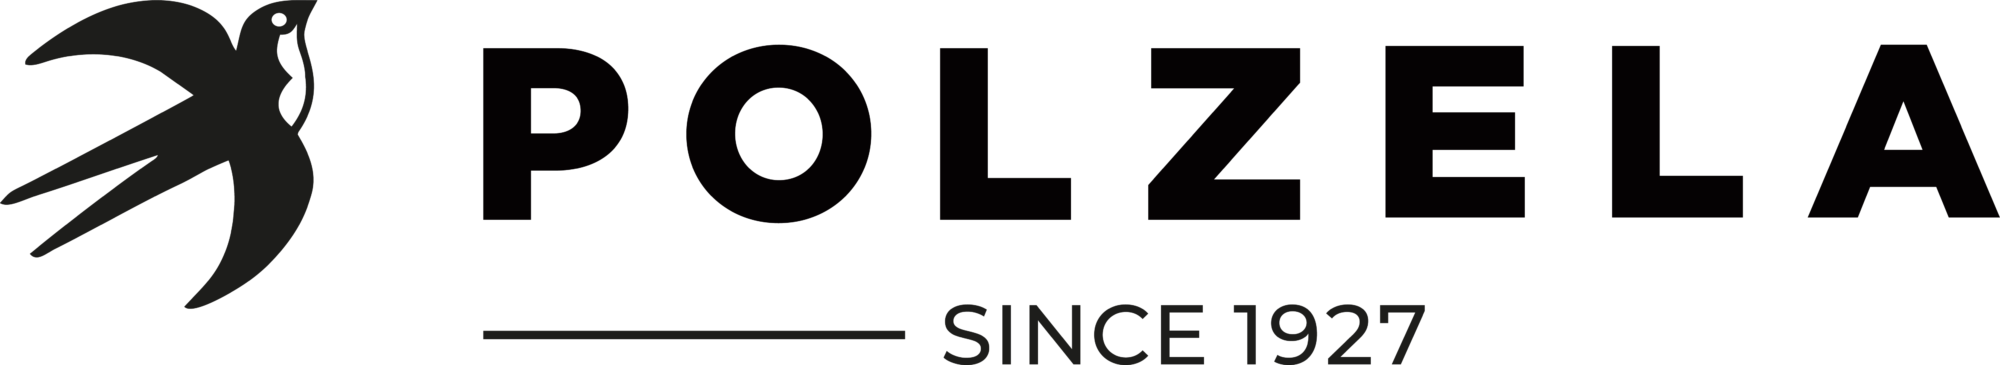 Polzela Shop Slovenija